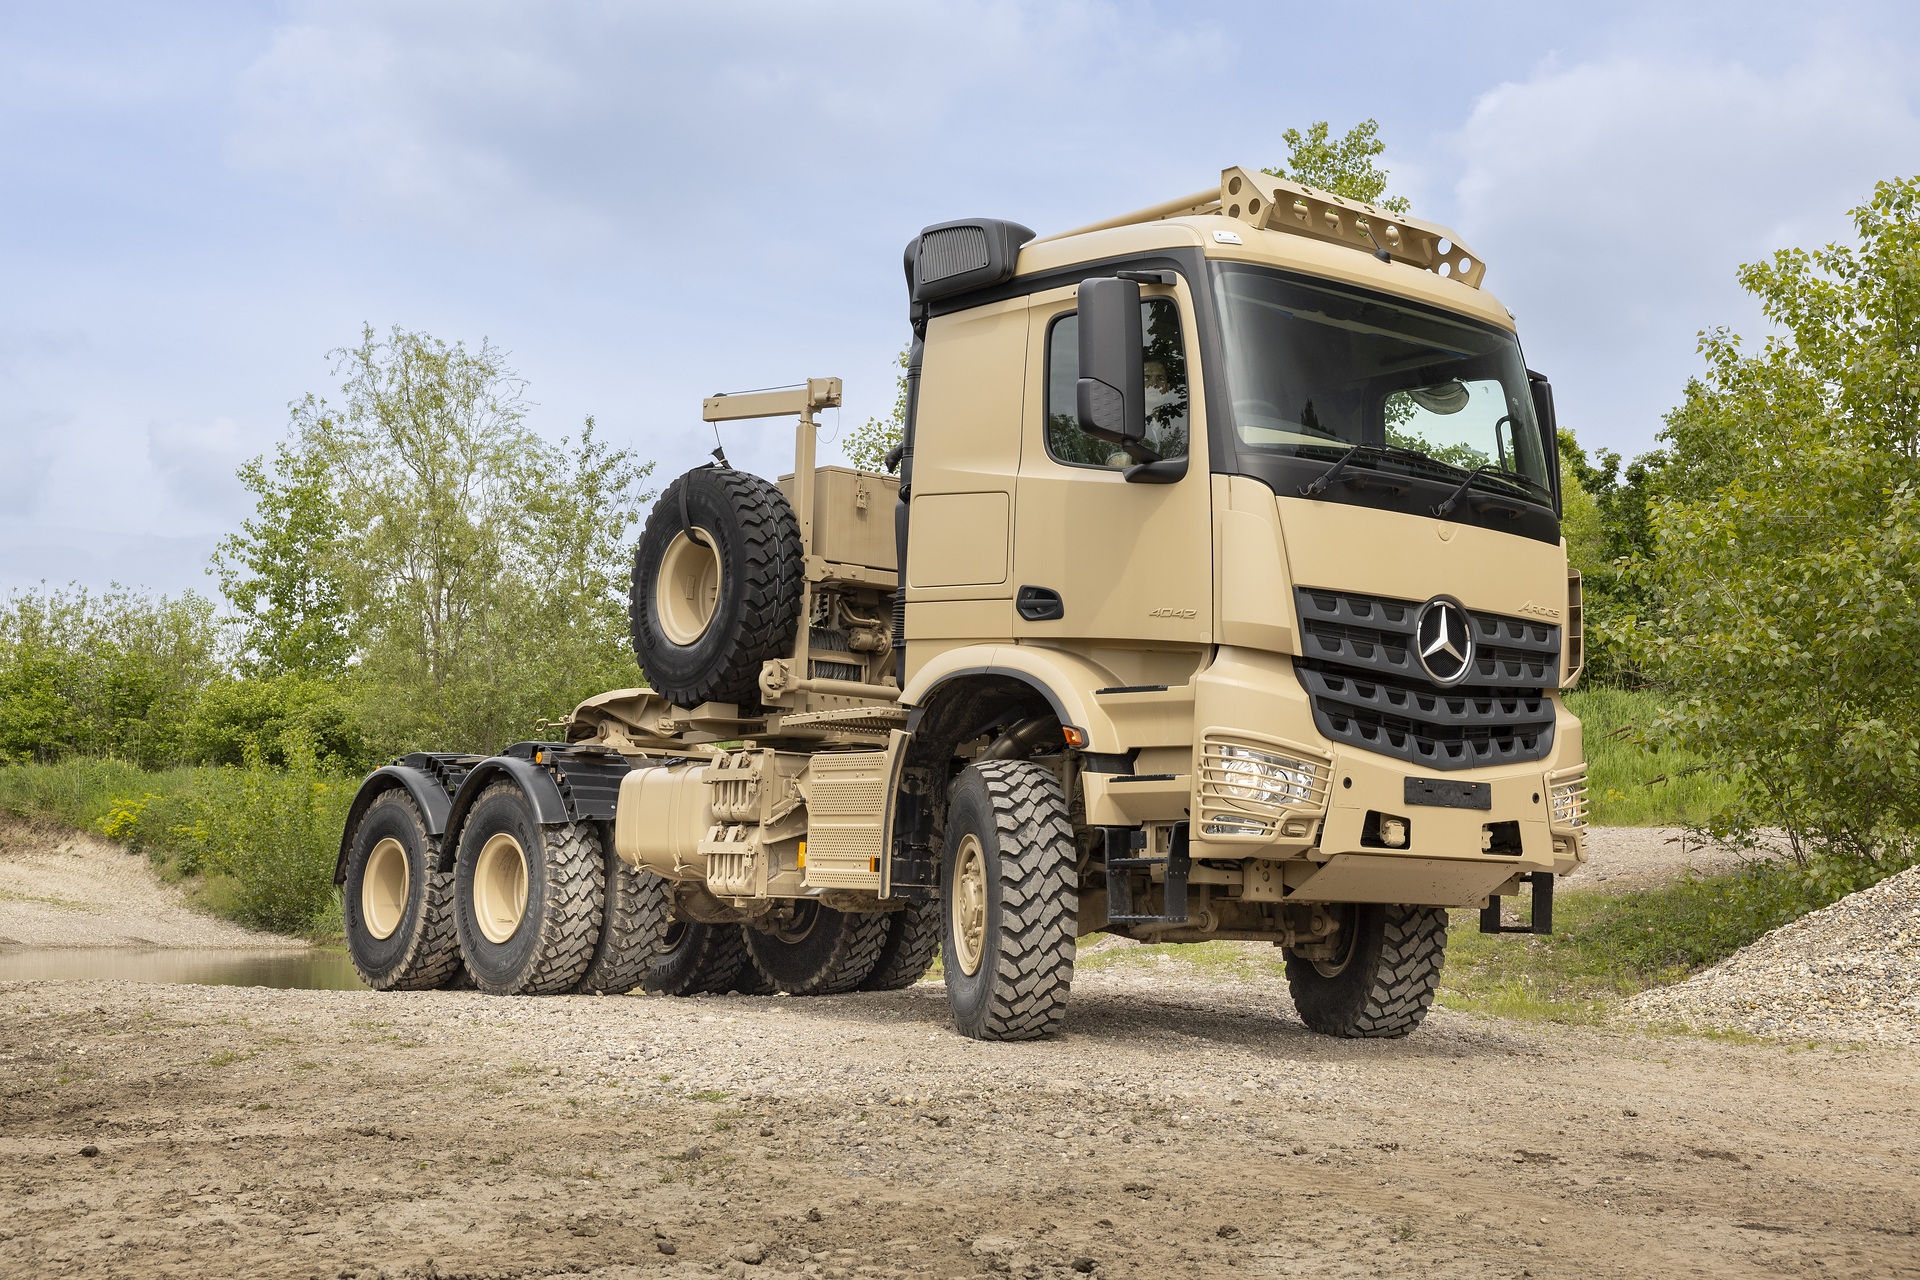 Mercedes-Benz Special Trucks erweitert Defence- Portfolio: vierachsiger Zetros mit Allradantrieb erstmals auf der Eurosatory zu sehen